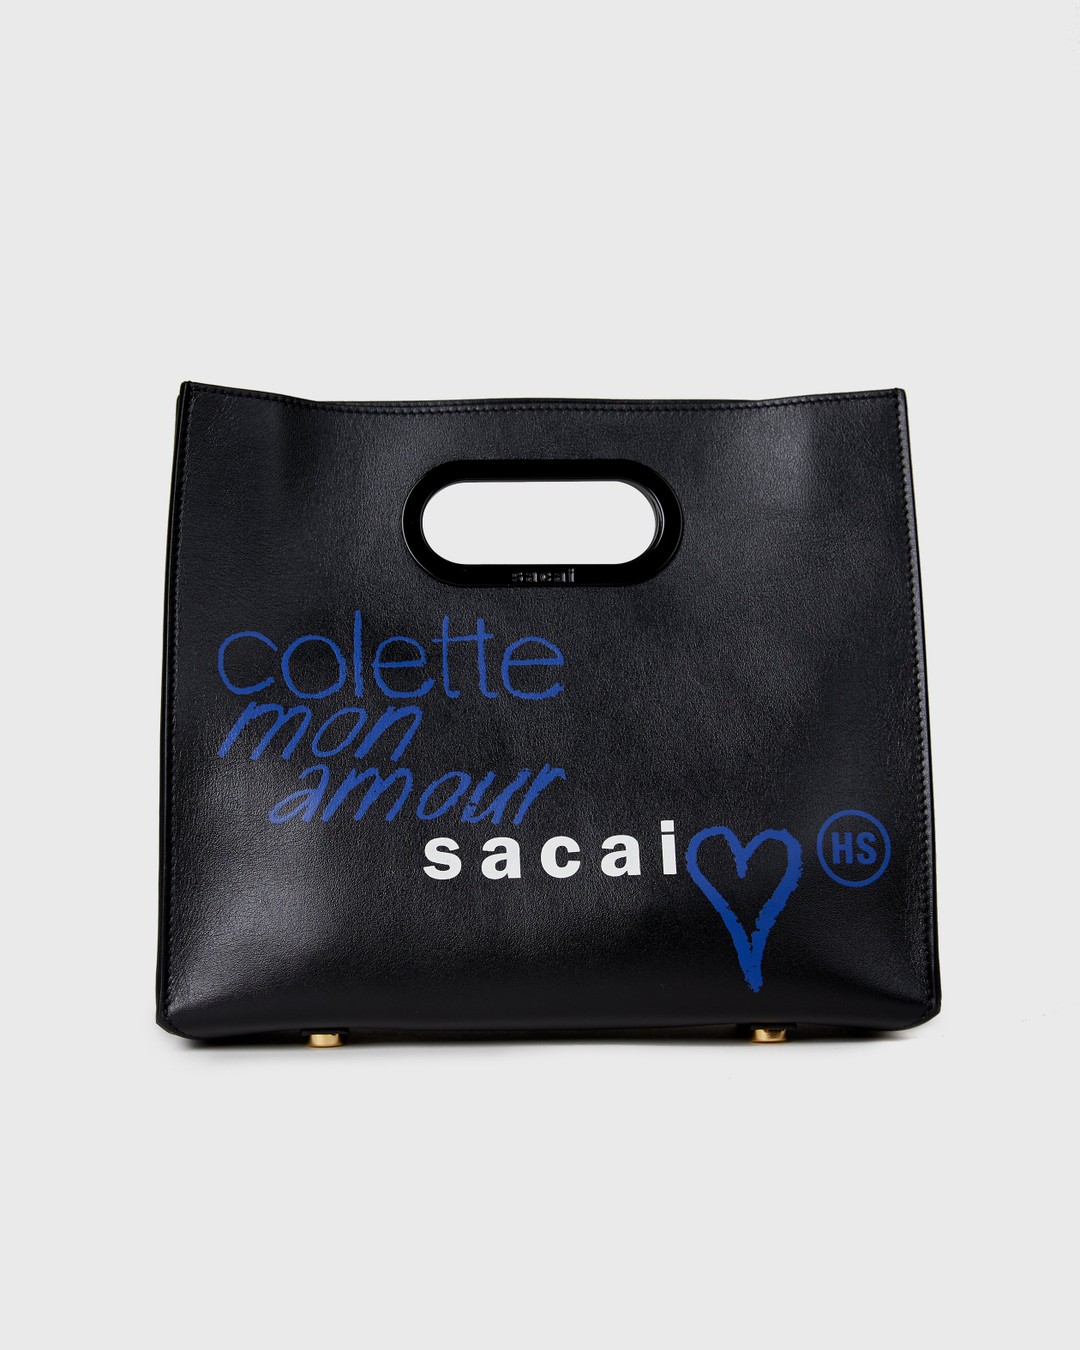 Sacai x Colette Mon Amour – Bag Black - Tote Bags - Black - Image 1